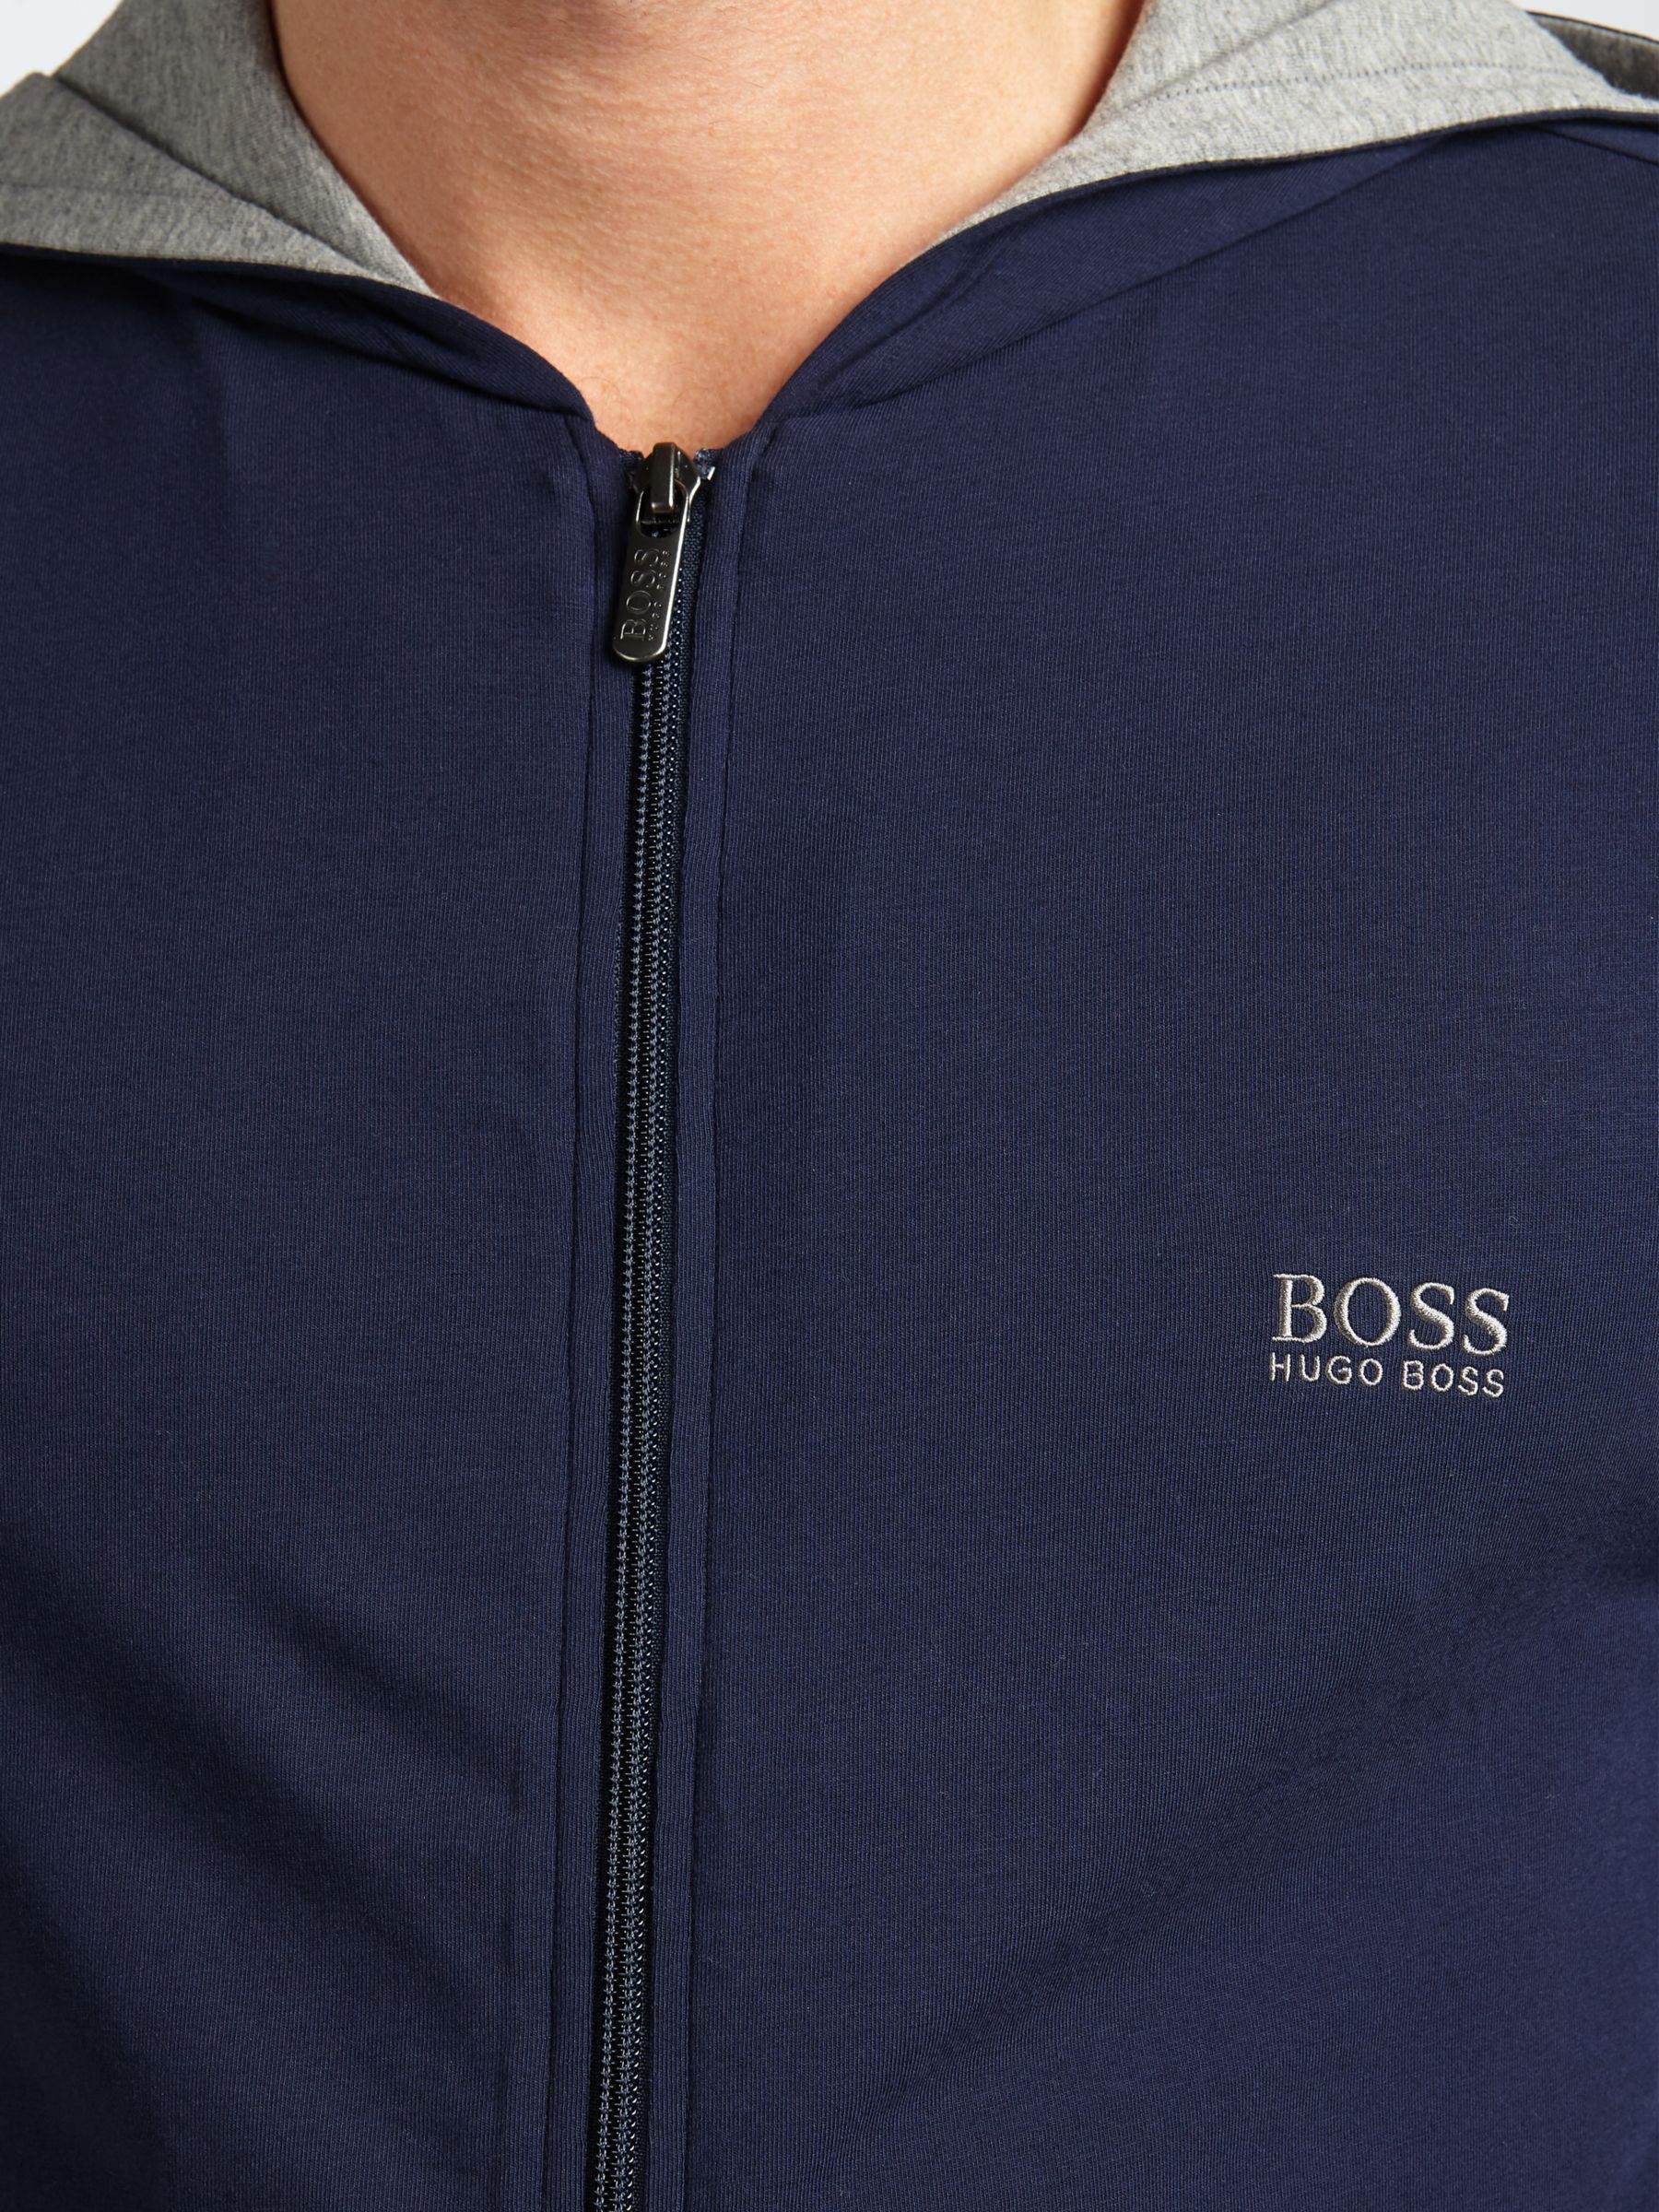 boss hugo boss full zip sweatshirt navy